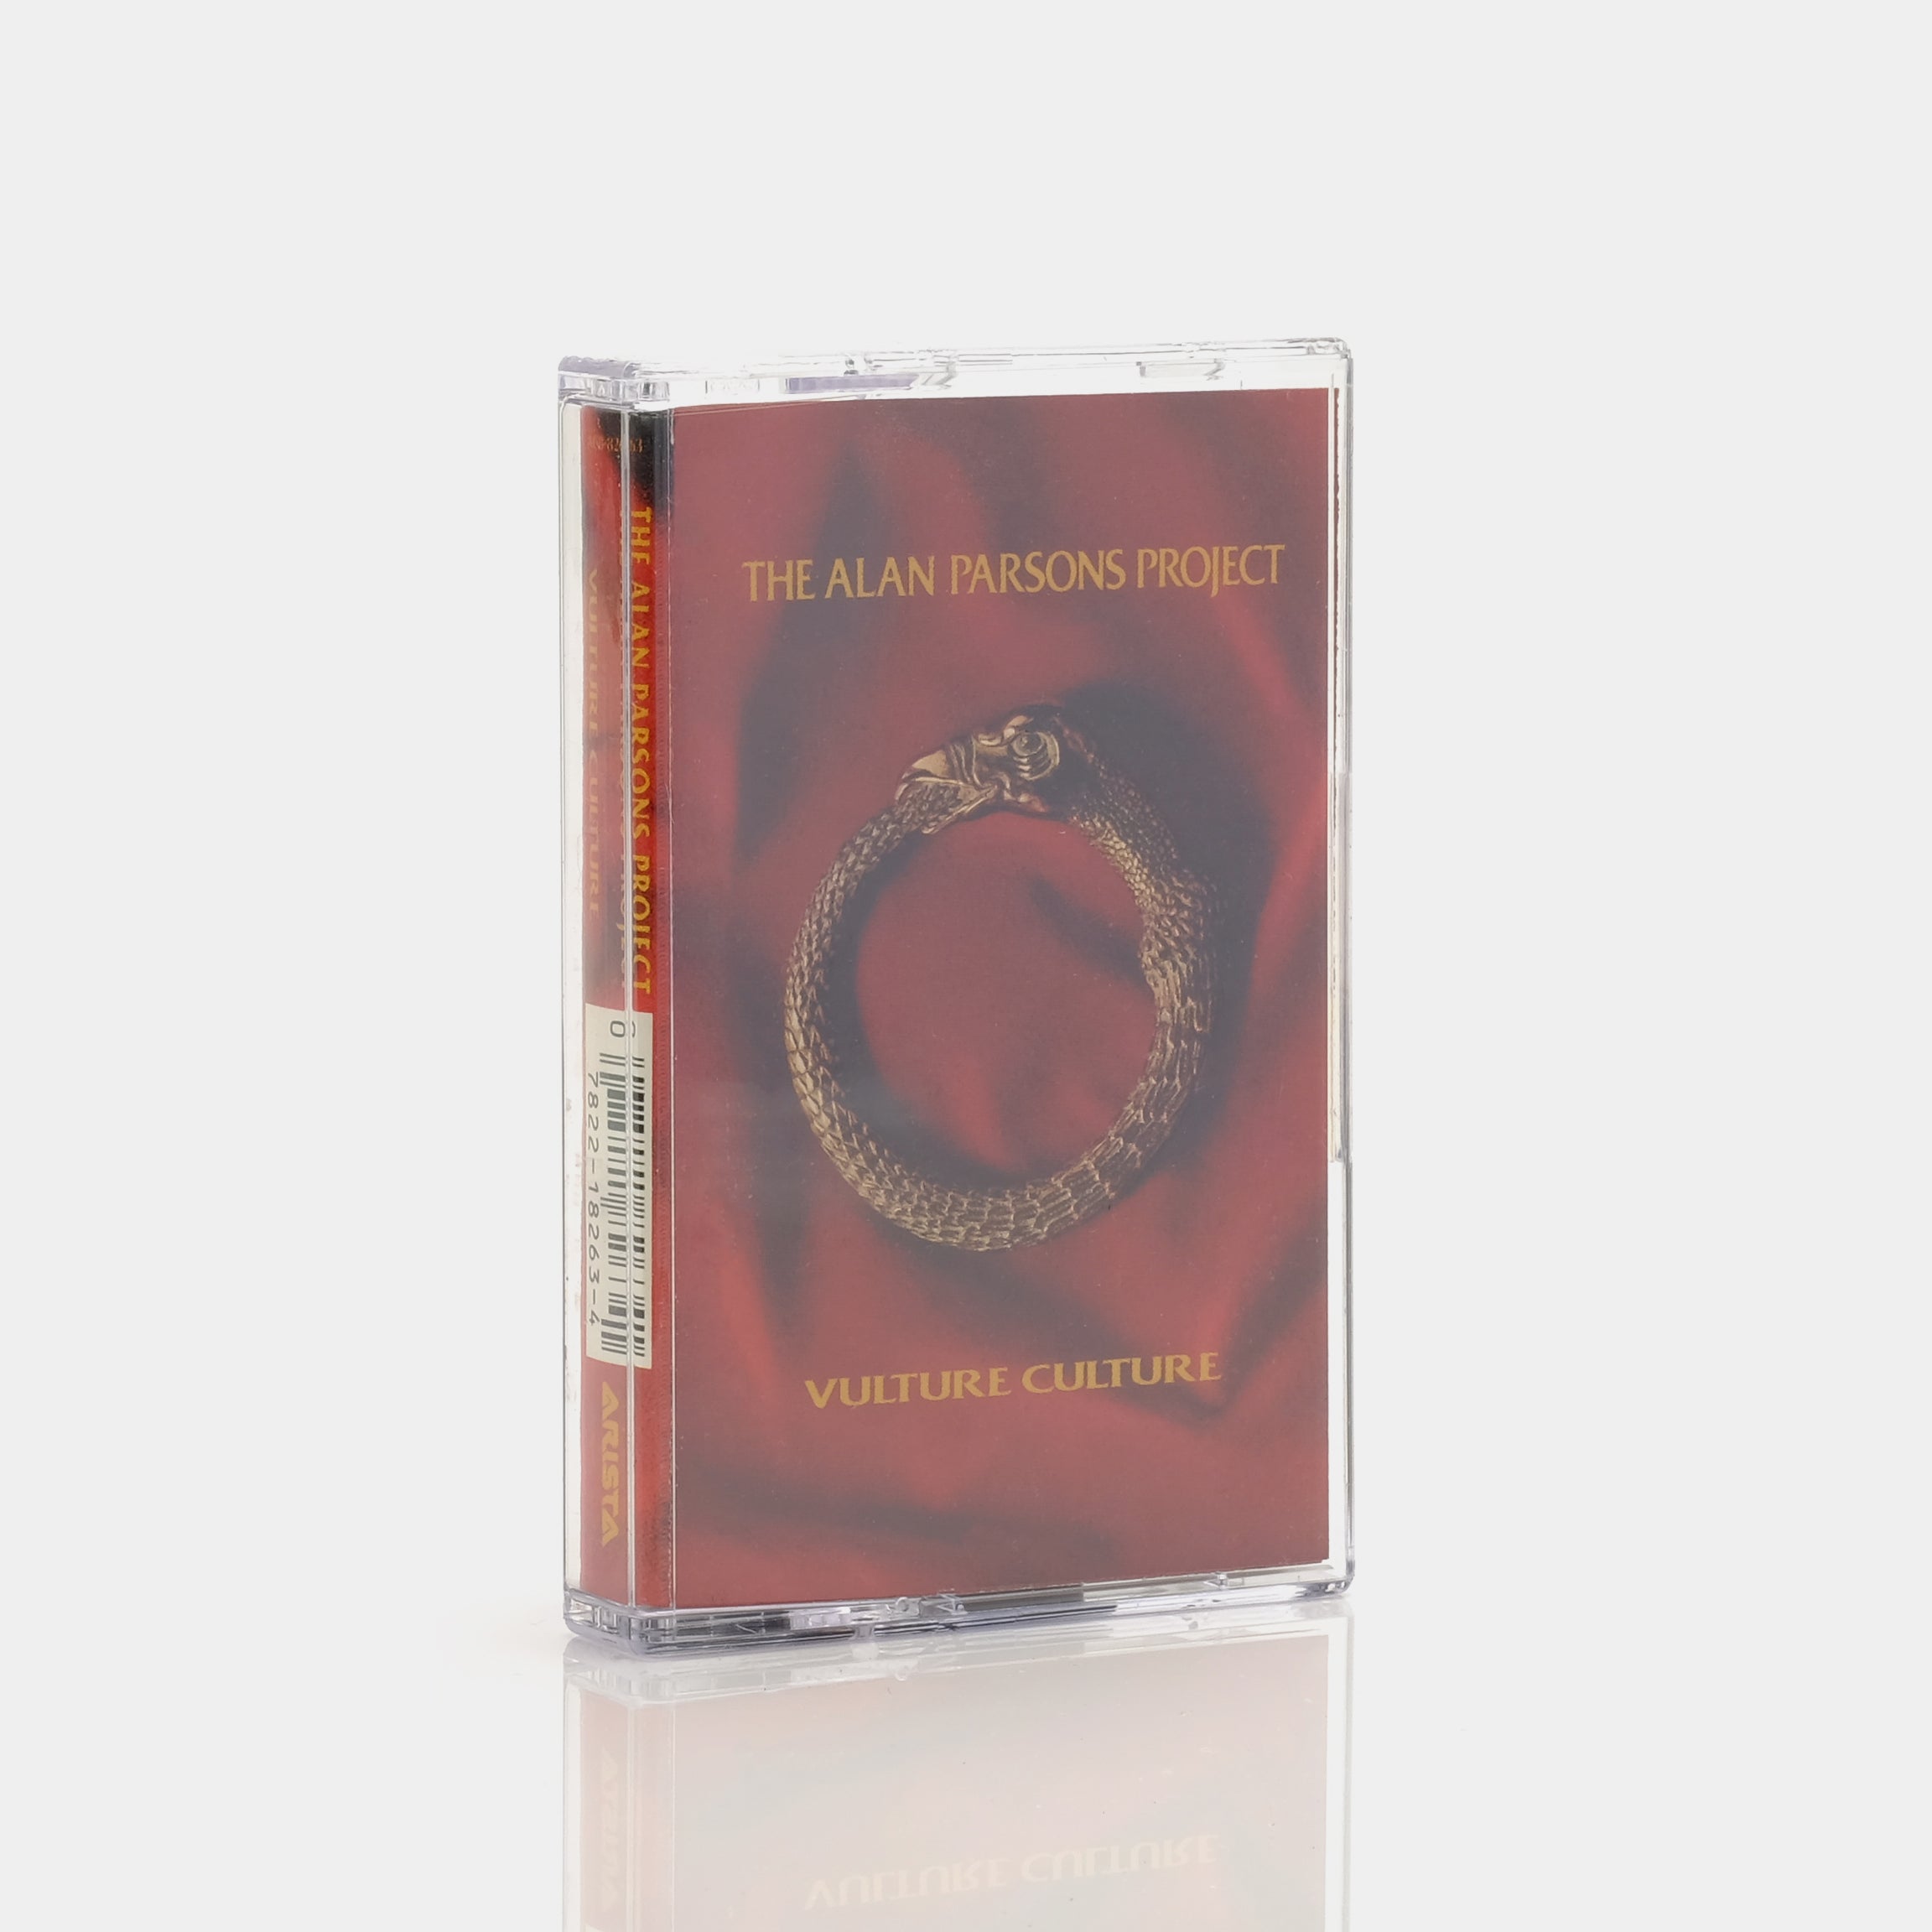 The Alan Parsons Project - Vulture Culture Cassette Tape